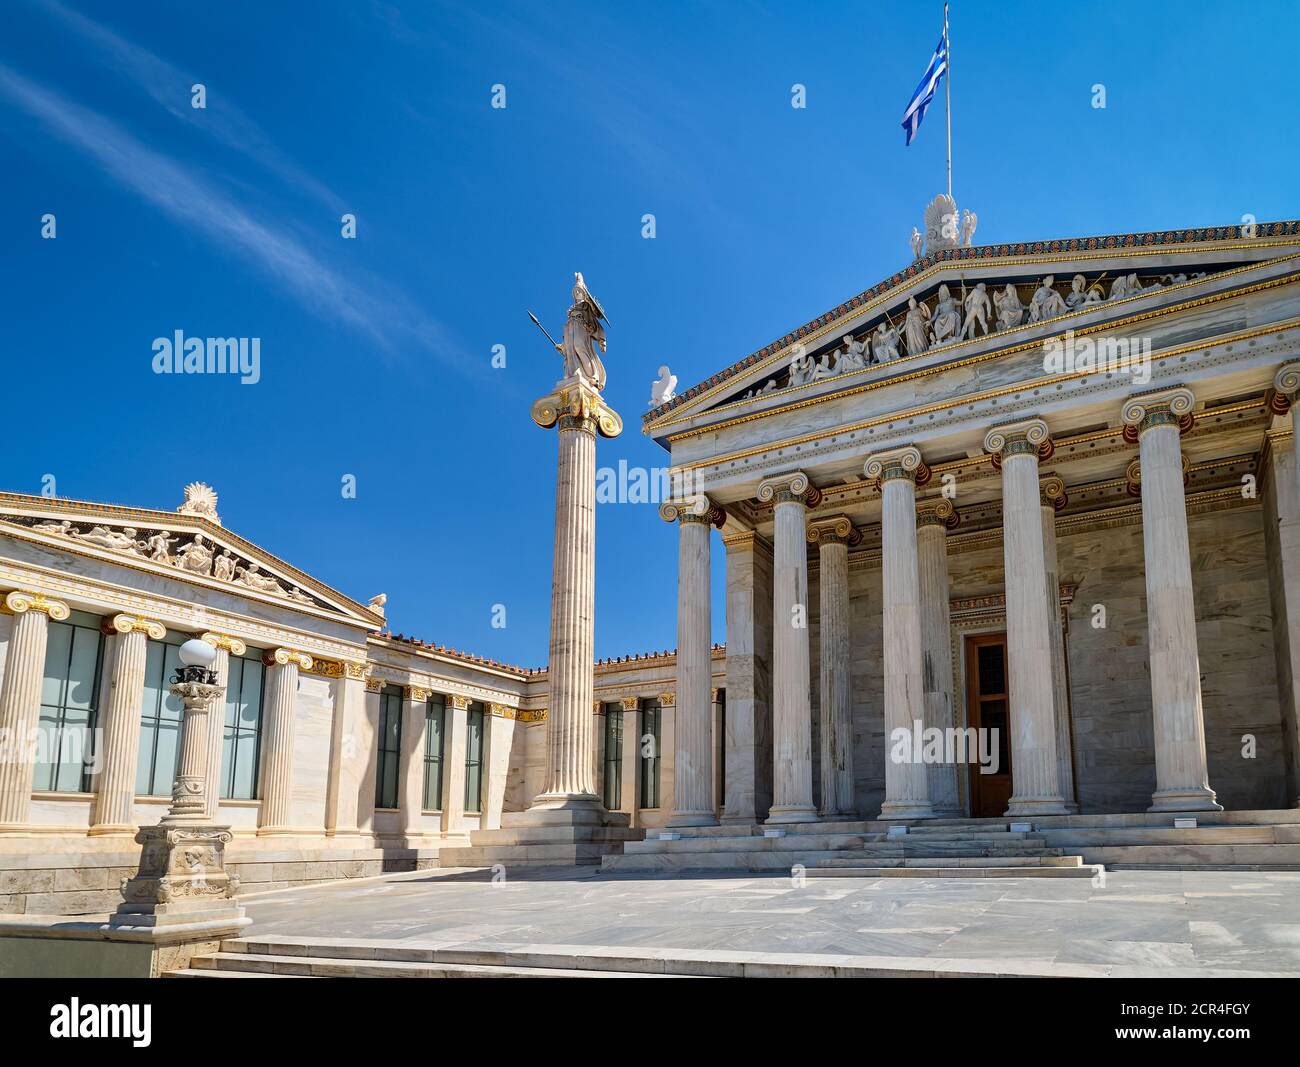 Eintritt zur Akademie von Athen, Griechenland, und Säule mit Statue der Athena, antike griechische Göttin, Patron der Stadt, bei hellem Tageslicht, Sommersonne. Stockfoto